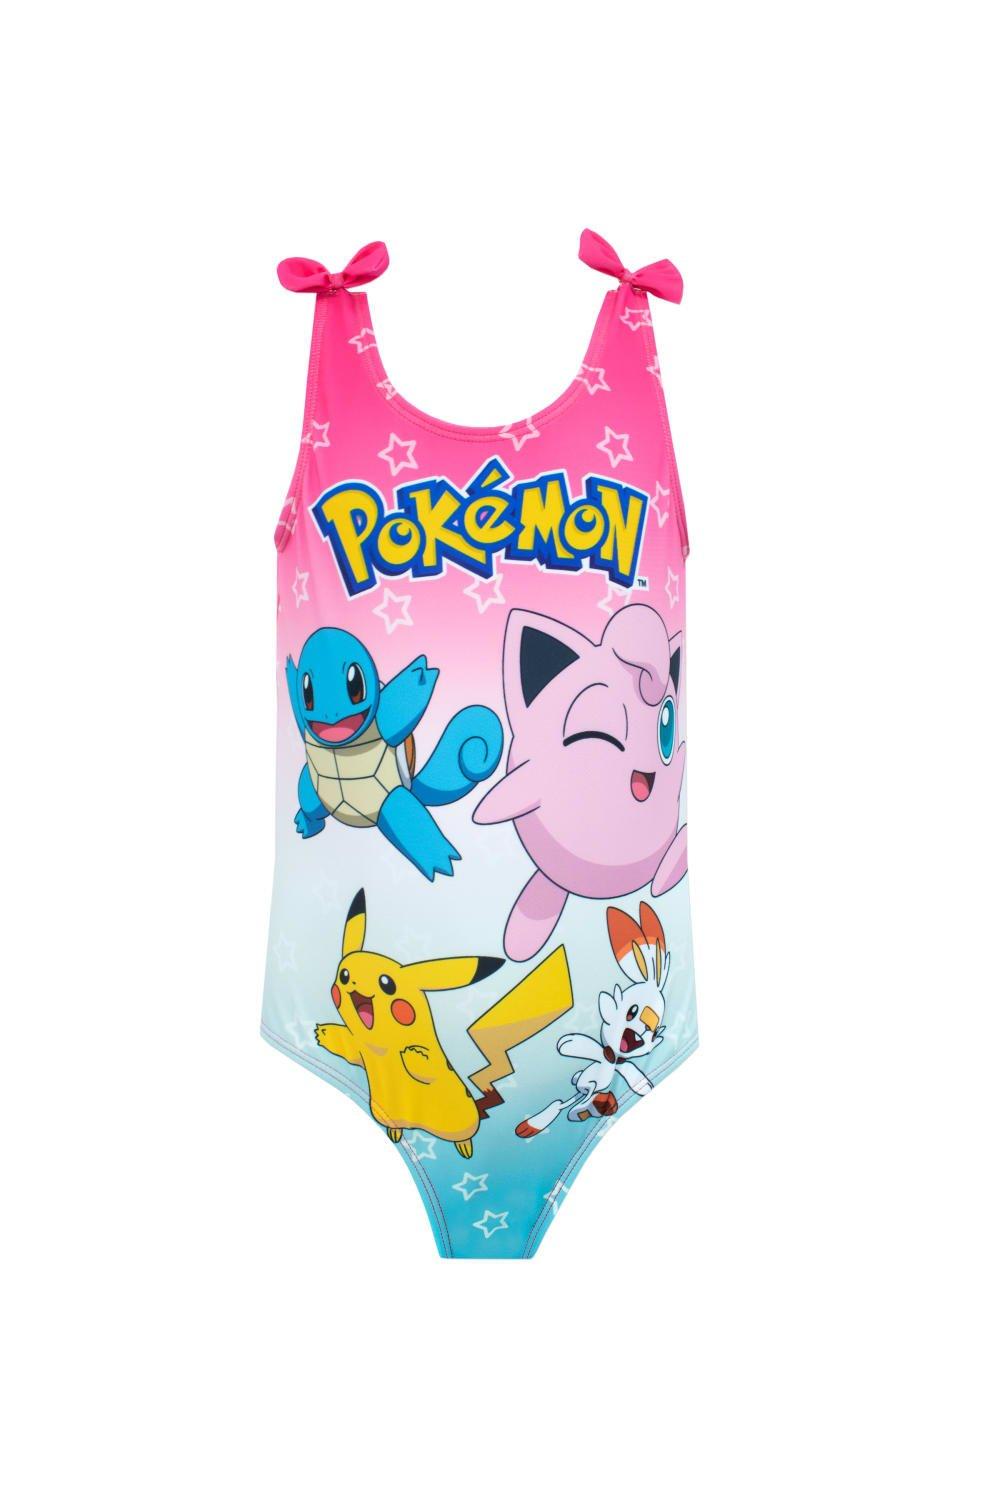 Купальник Пикачу с бантом Pokemon, розовый новый неопреновый детский гидрокостюм с медузой купальник для девочек короткий купальник для серфинга купальный костюм для девочек купа